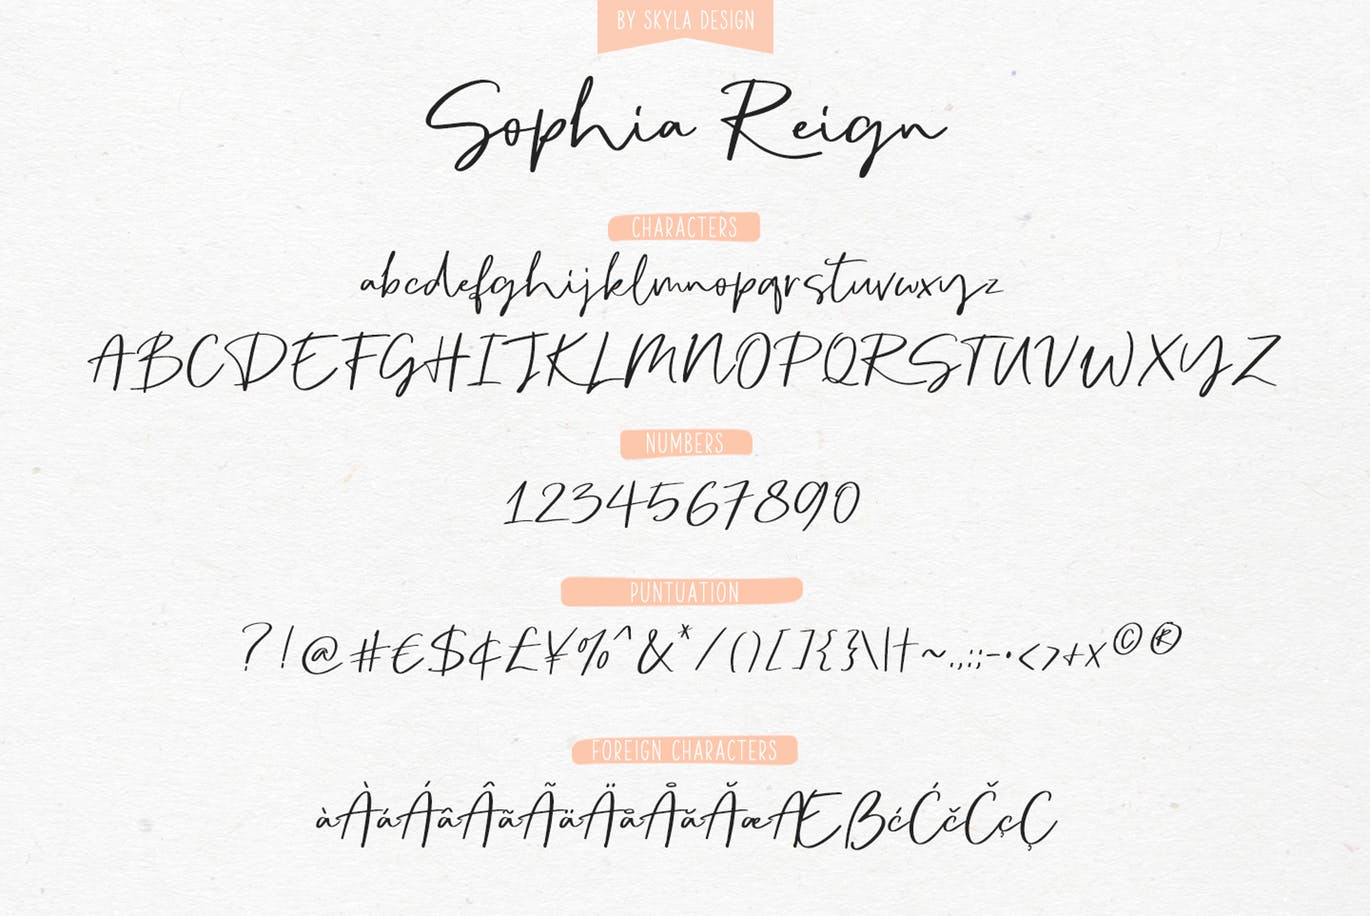 英文钢笔签名字体第一素材精选&大写字母正楷字体第一素材精选二重奏 Sophia Reign signature font duo插图(10)